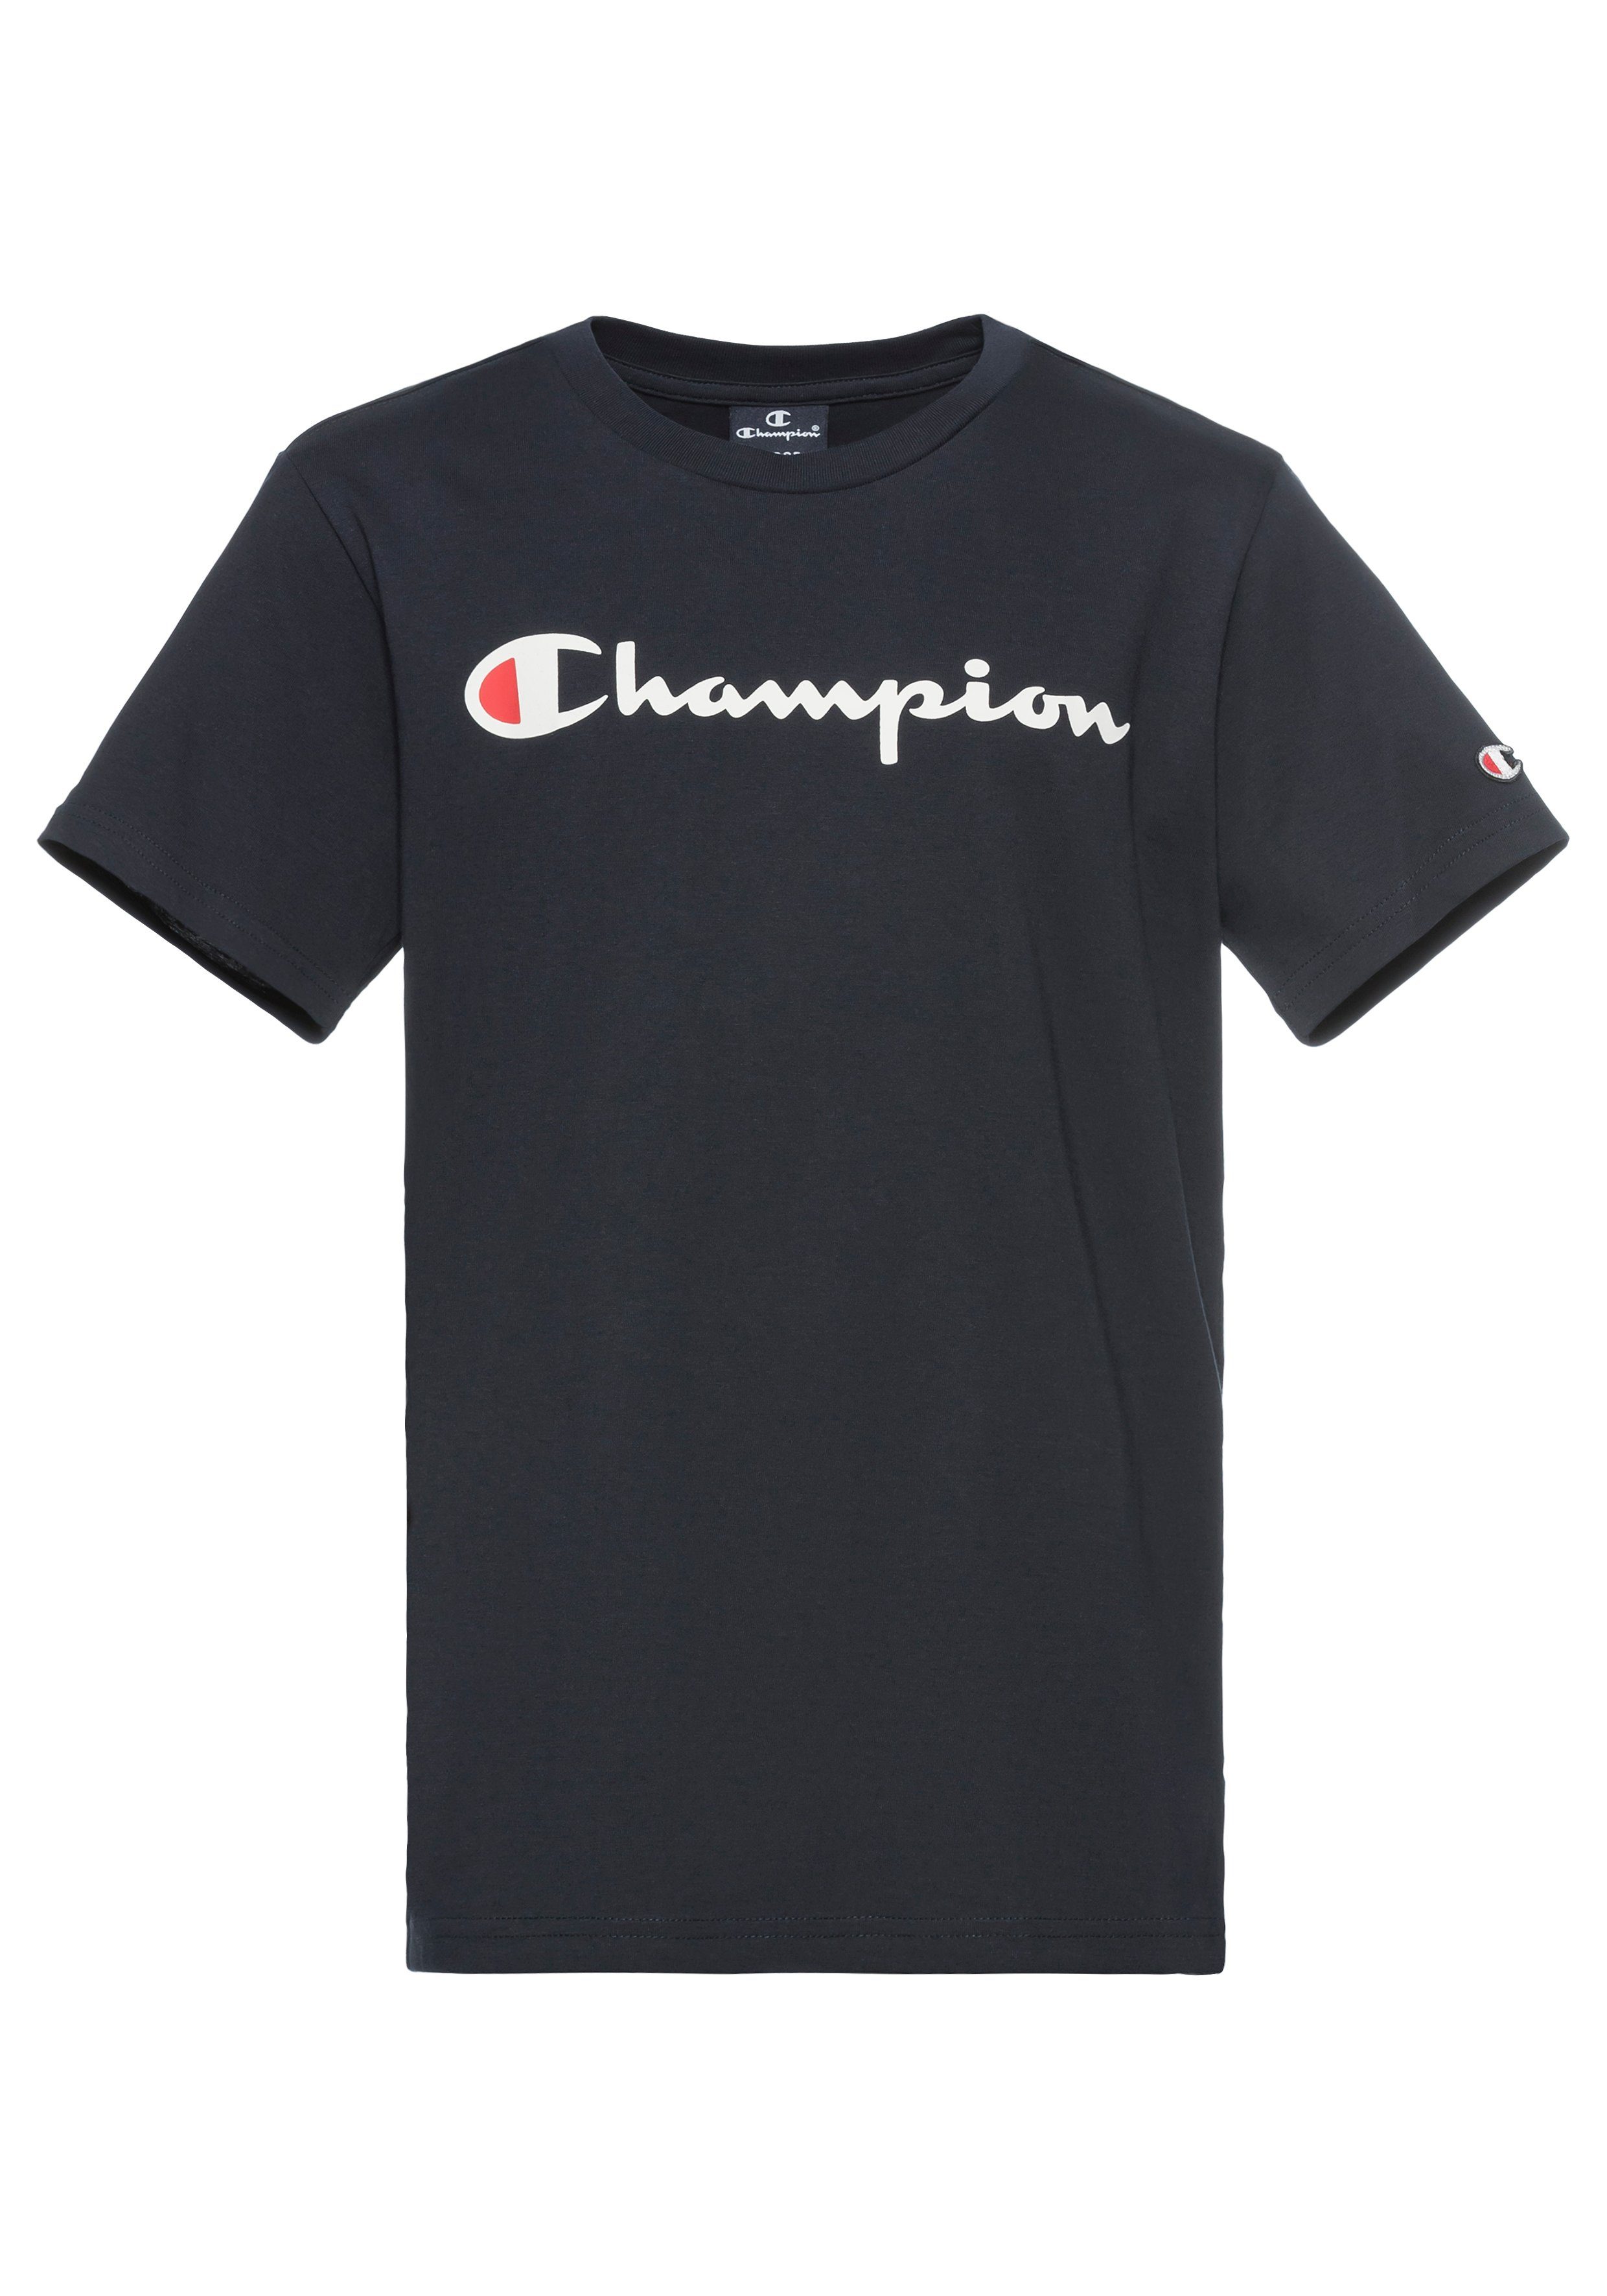 Champion T-shirt met logo donkerblauw Jongens Katoen Ronde hals Logo 146 152